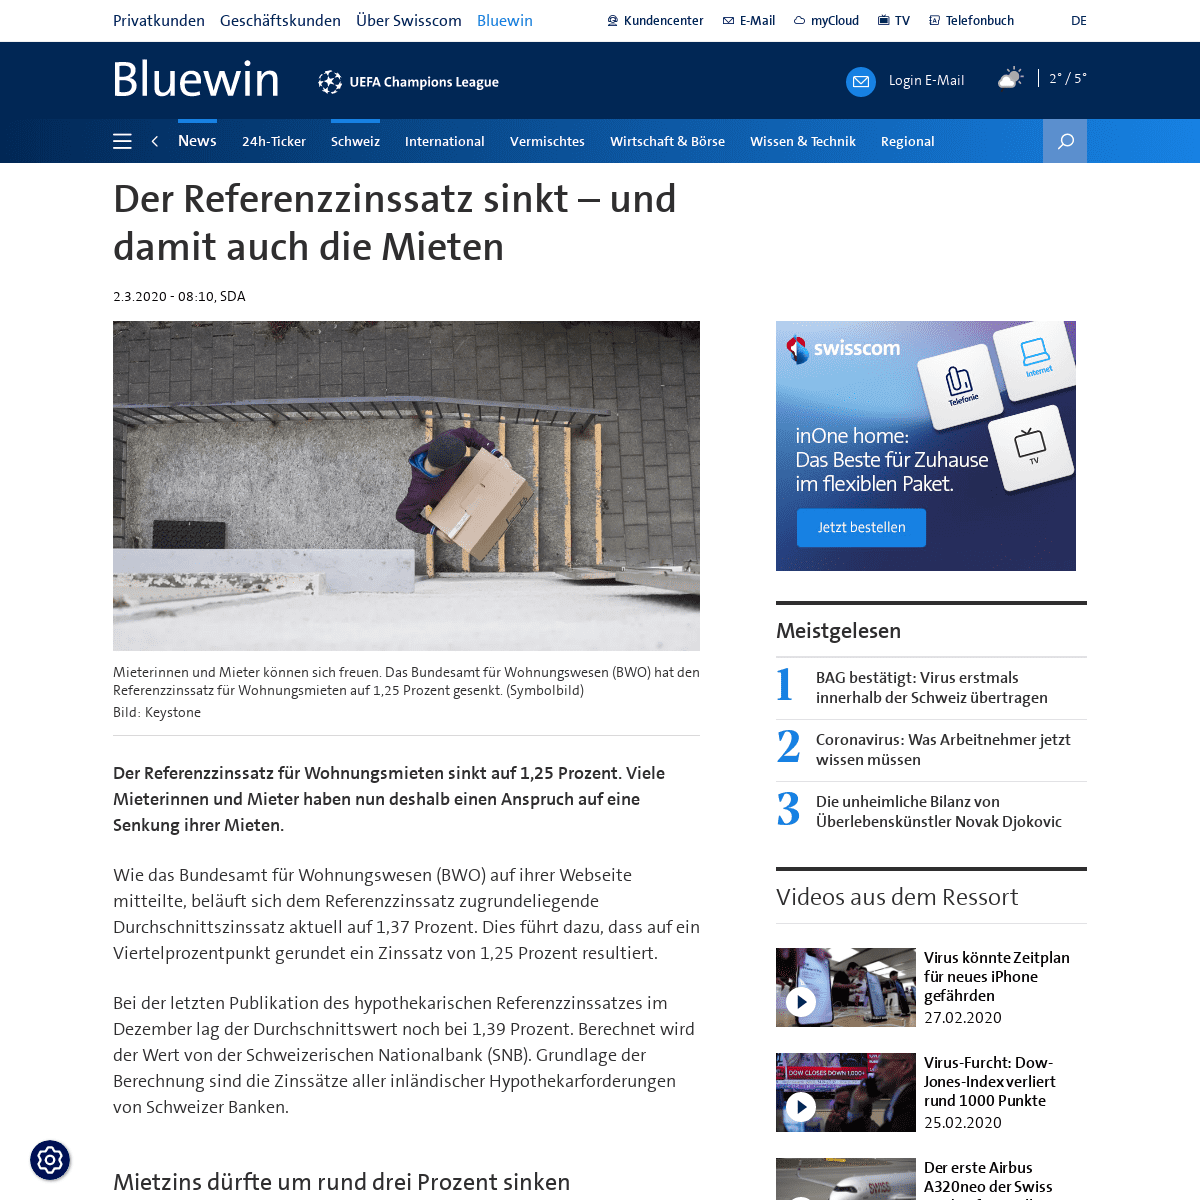 A complete backup of www.bluewin.ch/de/news/schweiz/referenzzins-fur-mieten-sinkt-363388.html